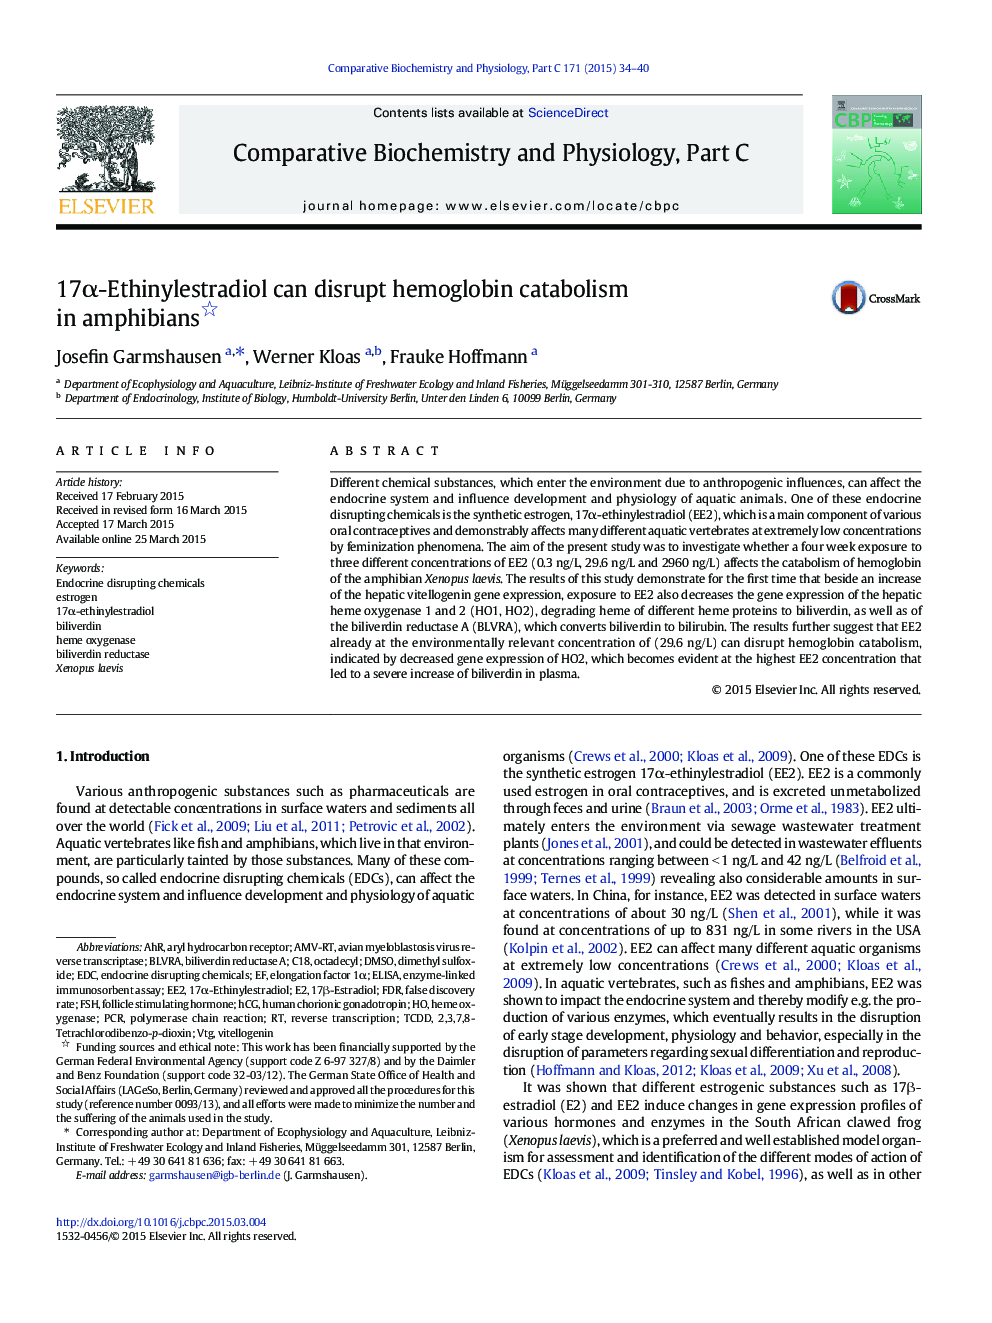 17α-Ethinylestradiol can disrupt hemoglobin catabolism in amphibians 